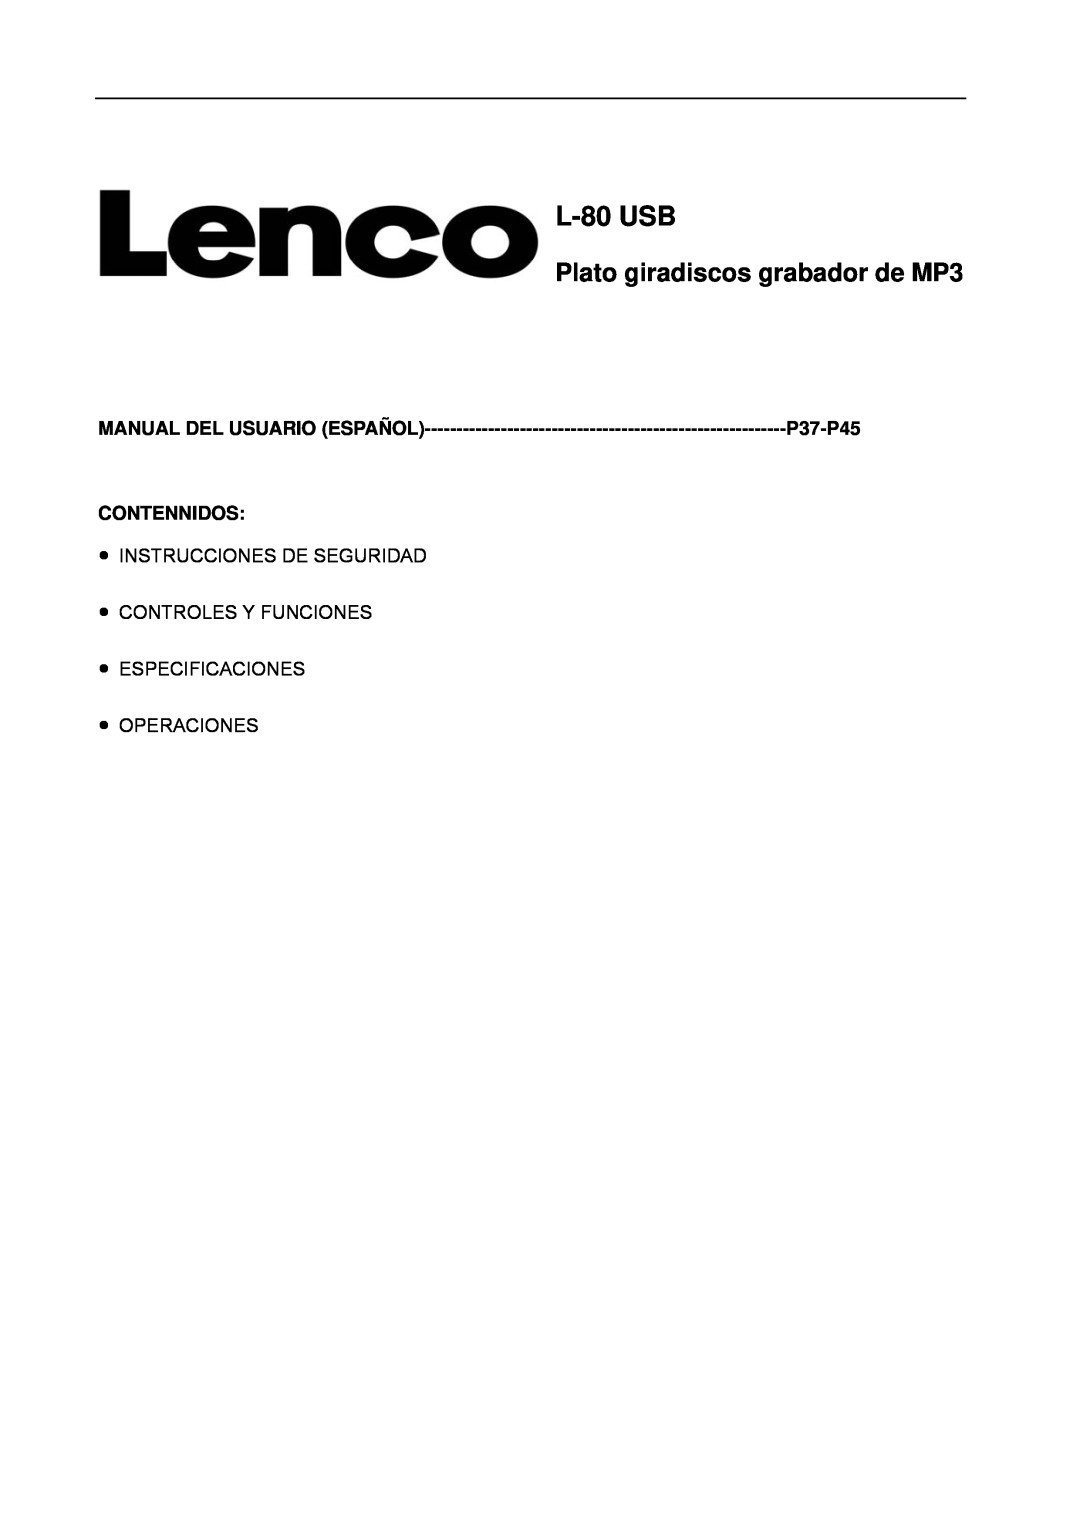 Lenco Marine L-80 USB Plato giradiscos grabador de MP3, Contennidos, L-80USB, Manual Del Usuario Español, P37-P45 